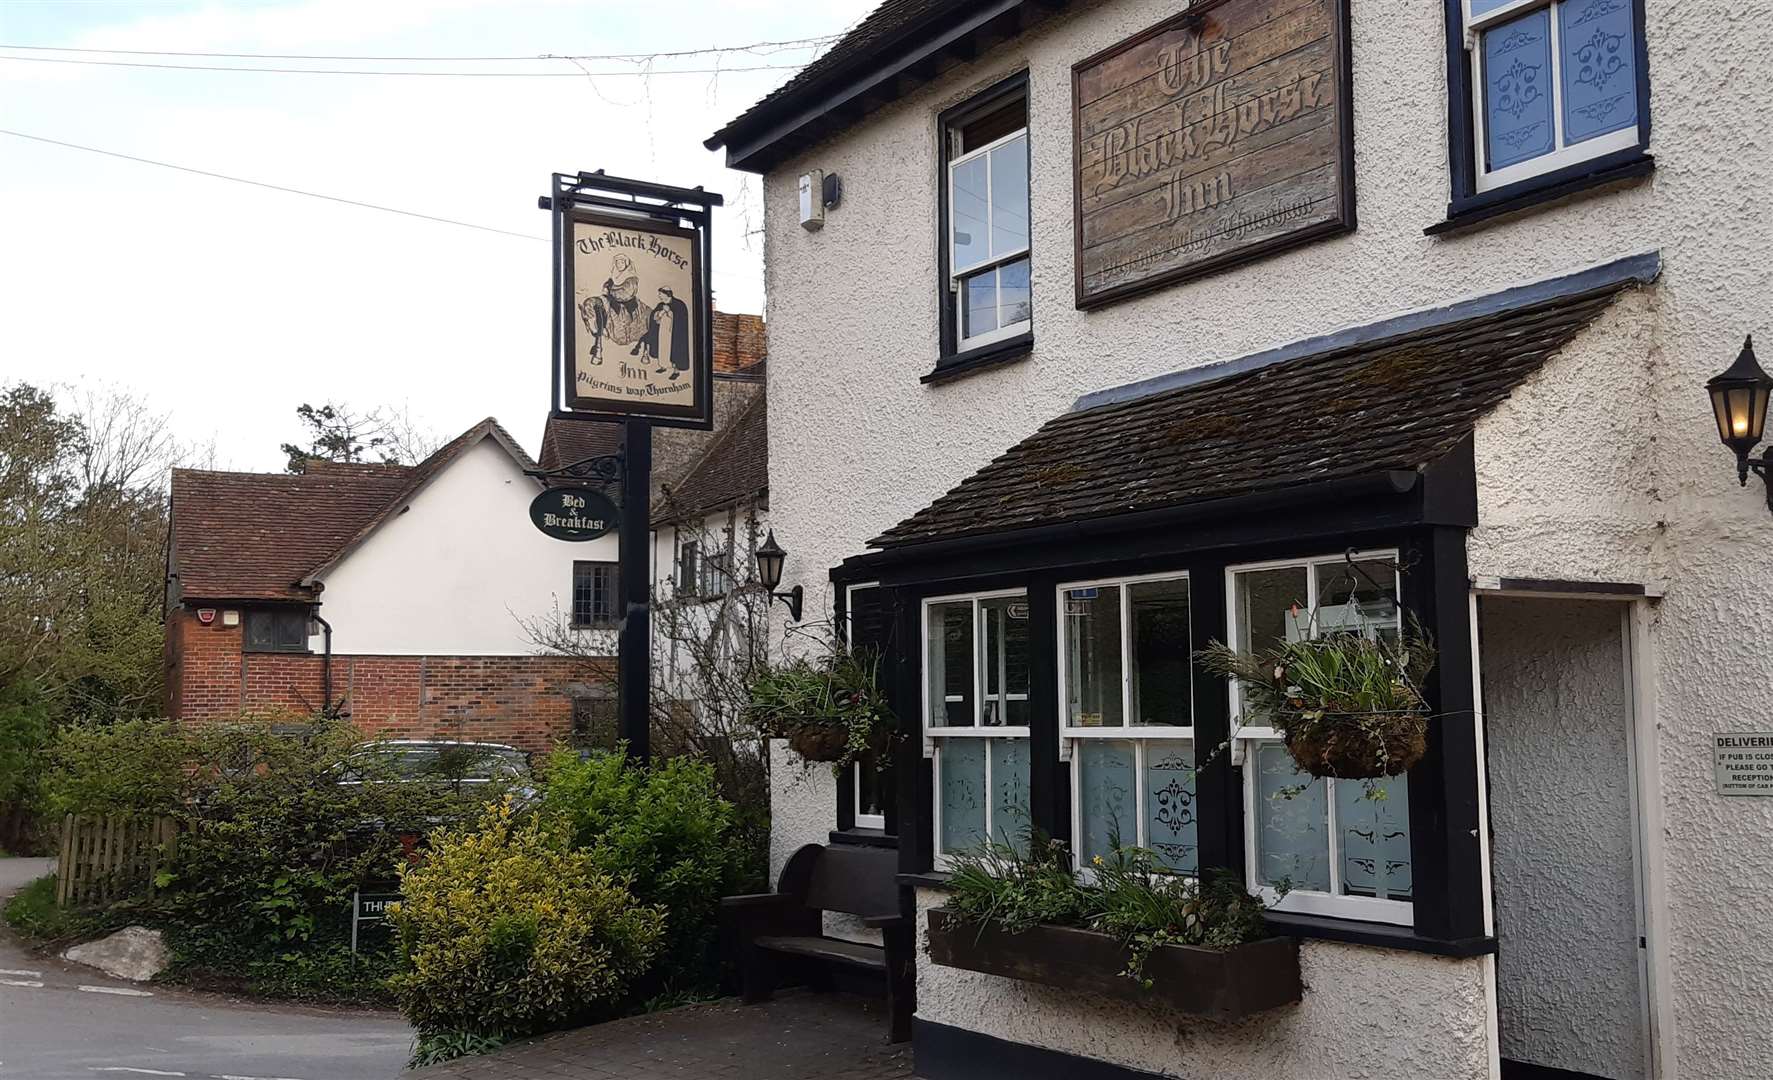 The Black Horse Inn in Thurnham is a dog friendly pub and restaurant